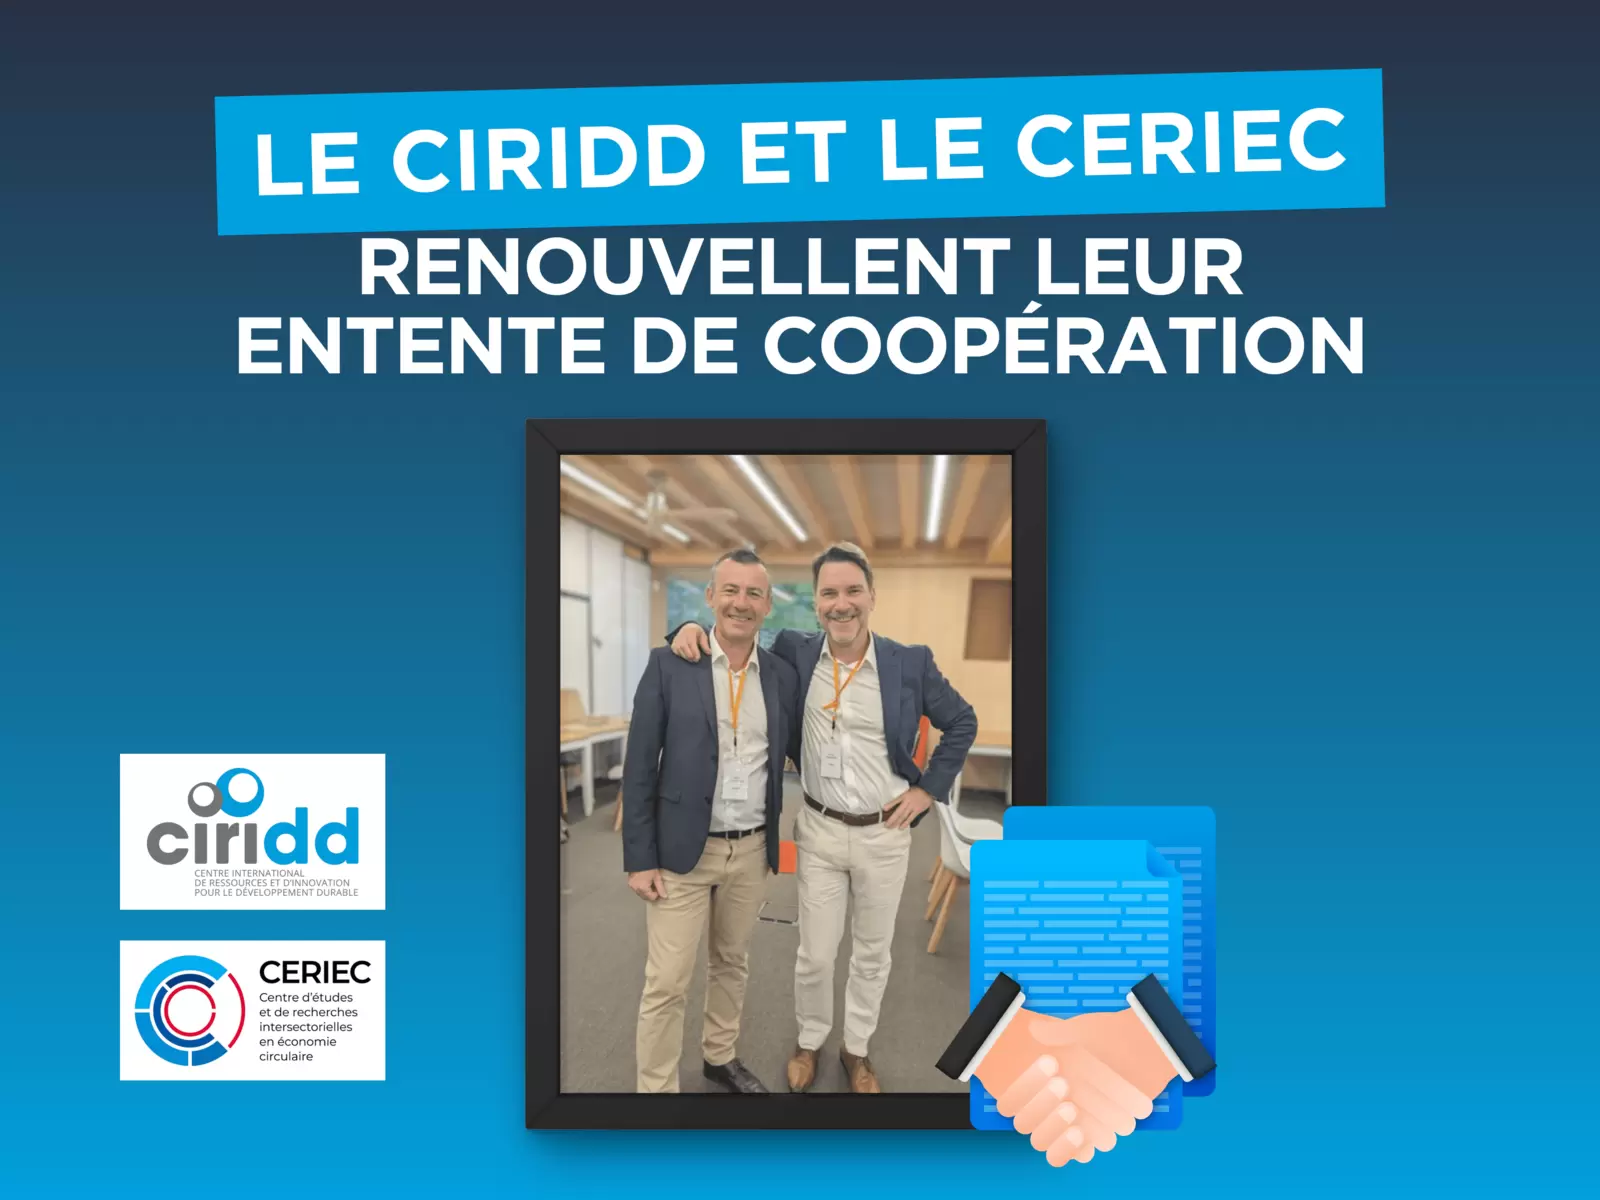 Le CIRIDD et le CERIEC renouvellent leur entente de coopération